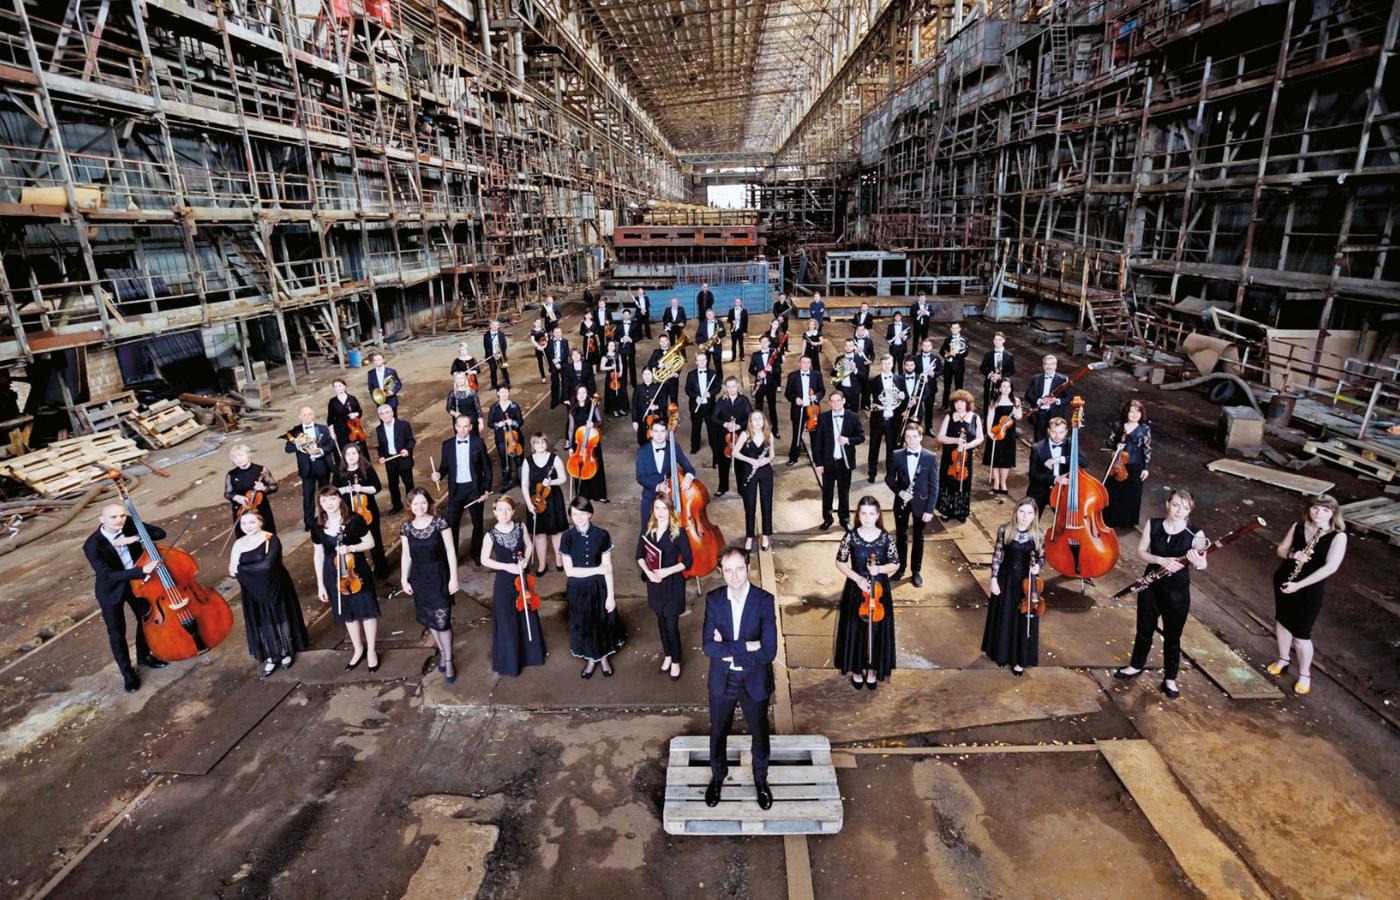 Kijowska Symfoniczna Orkiestra koncertowała w kwietniu 2022 r. w Filharmonii Narodowej w Warszawie.